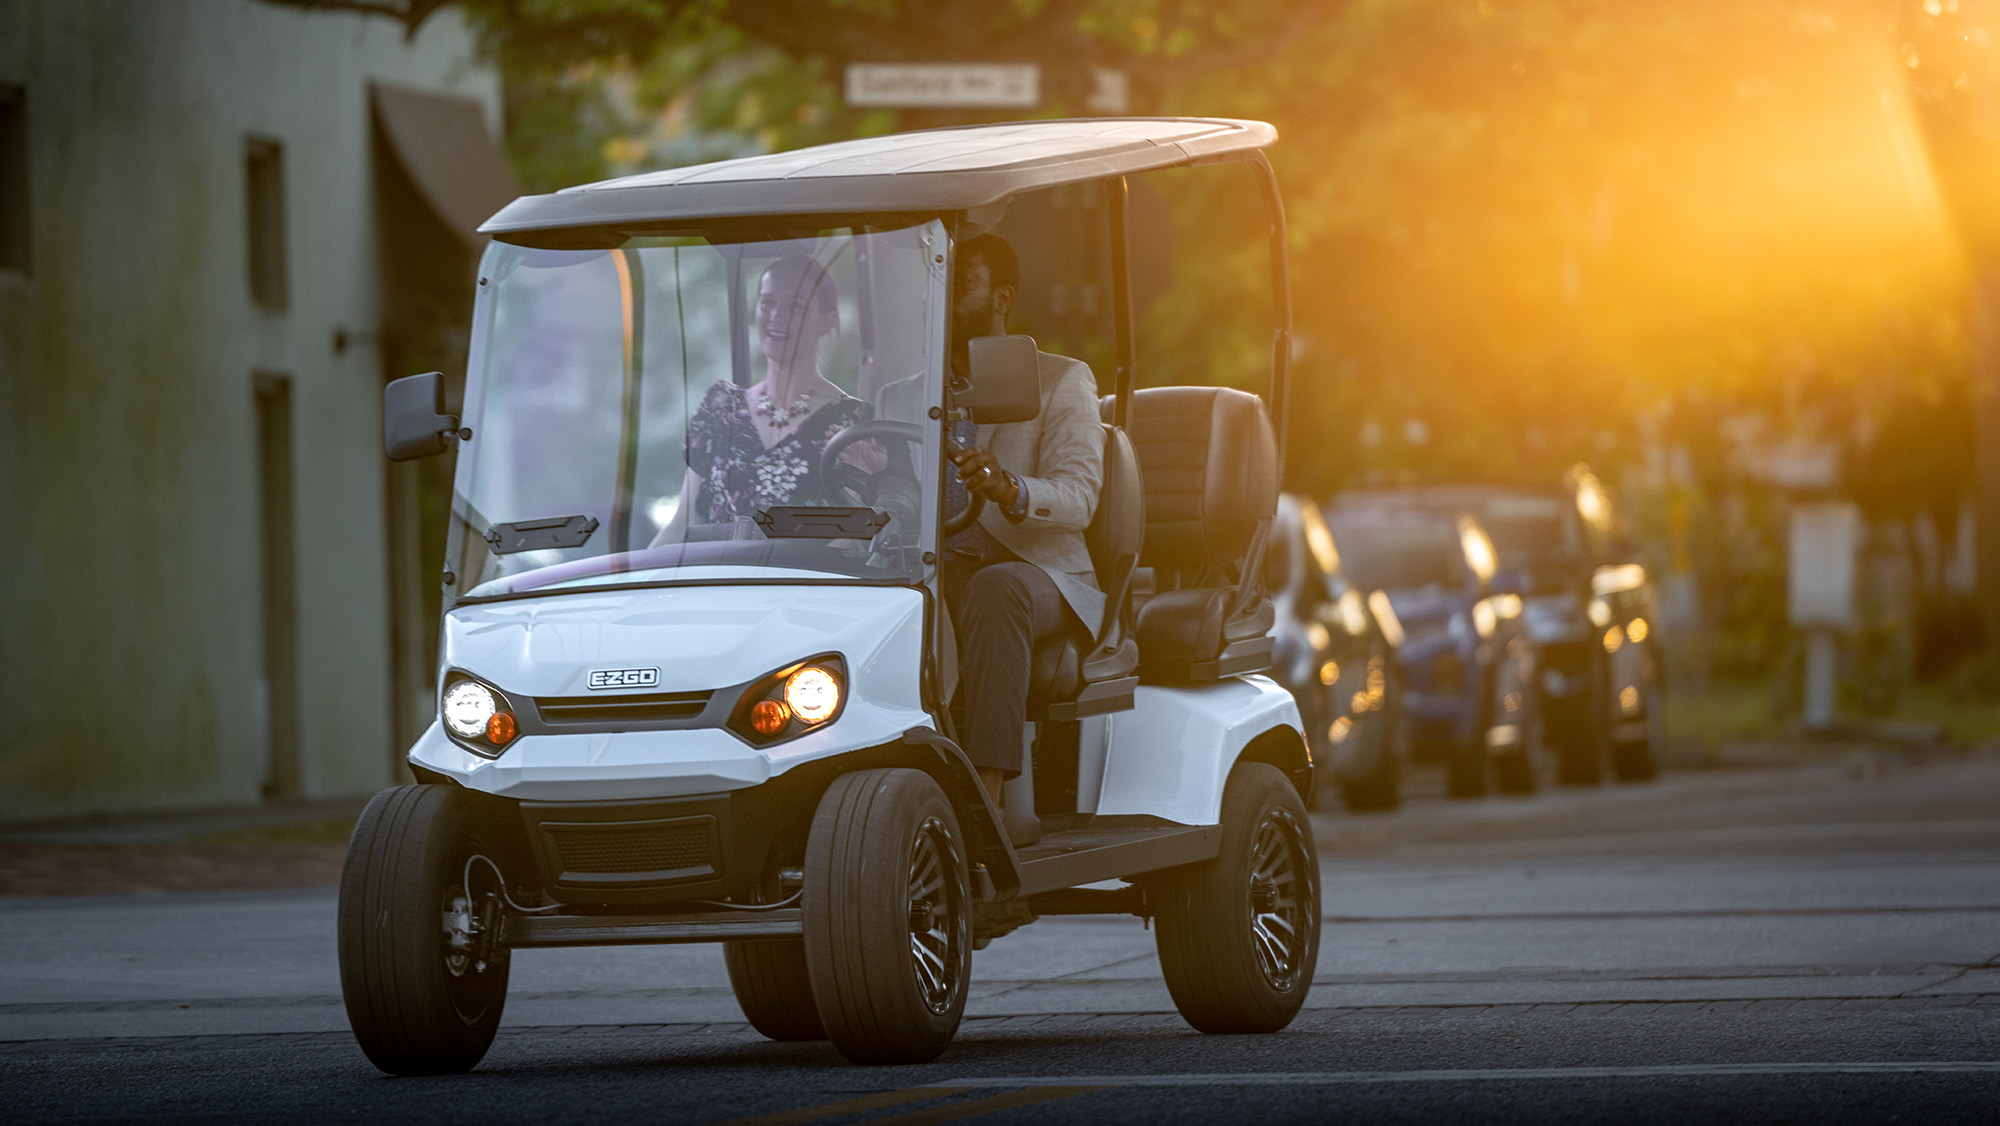 A couple driving an E-Z-GO golf cart down a street.